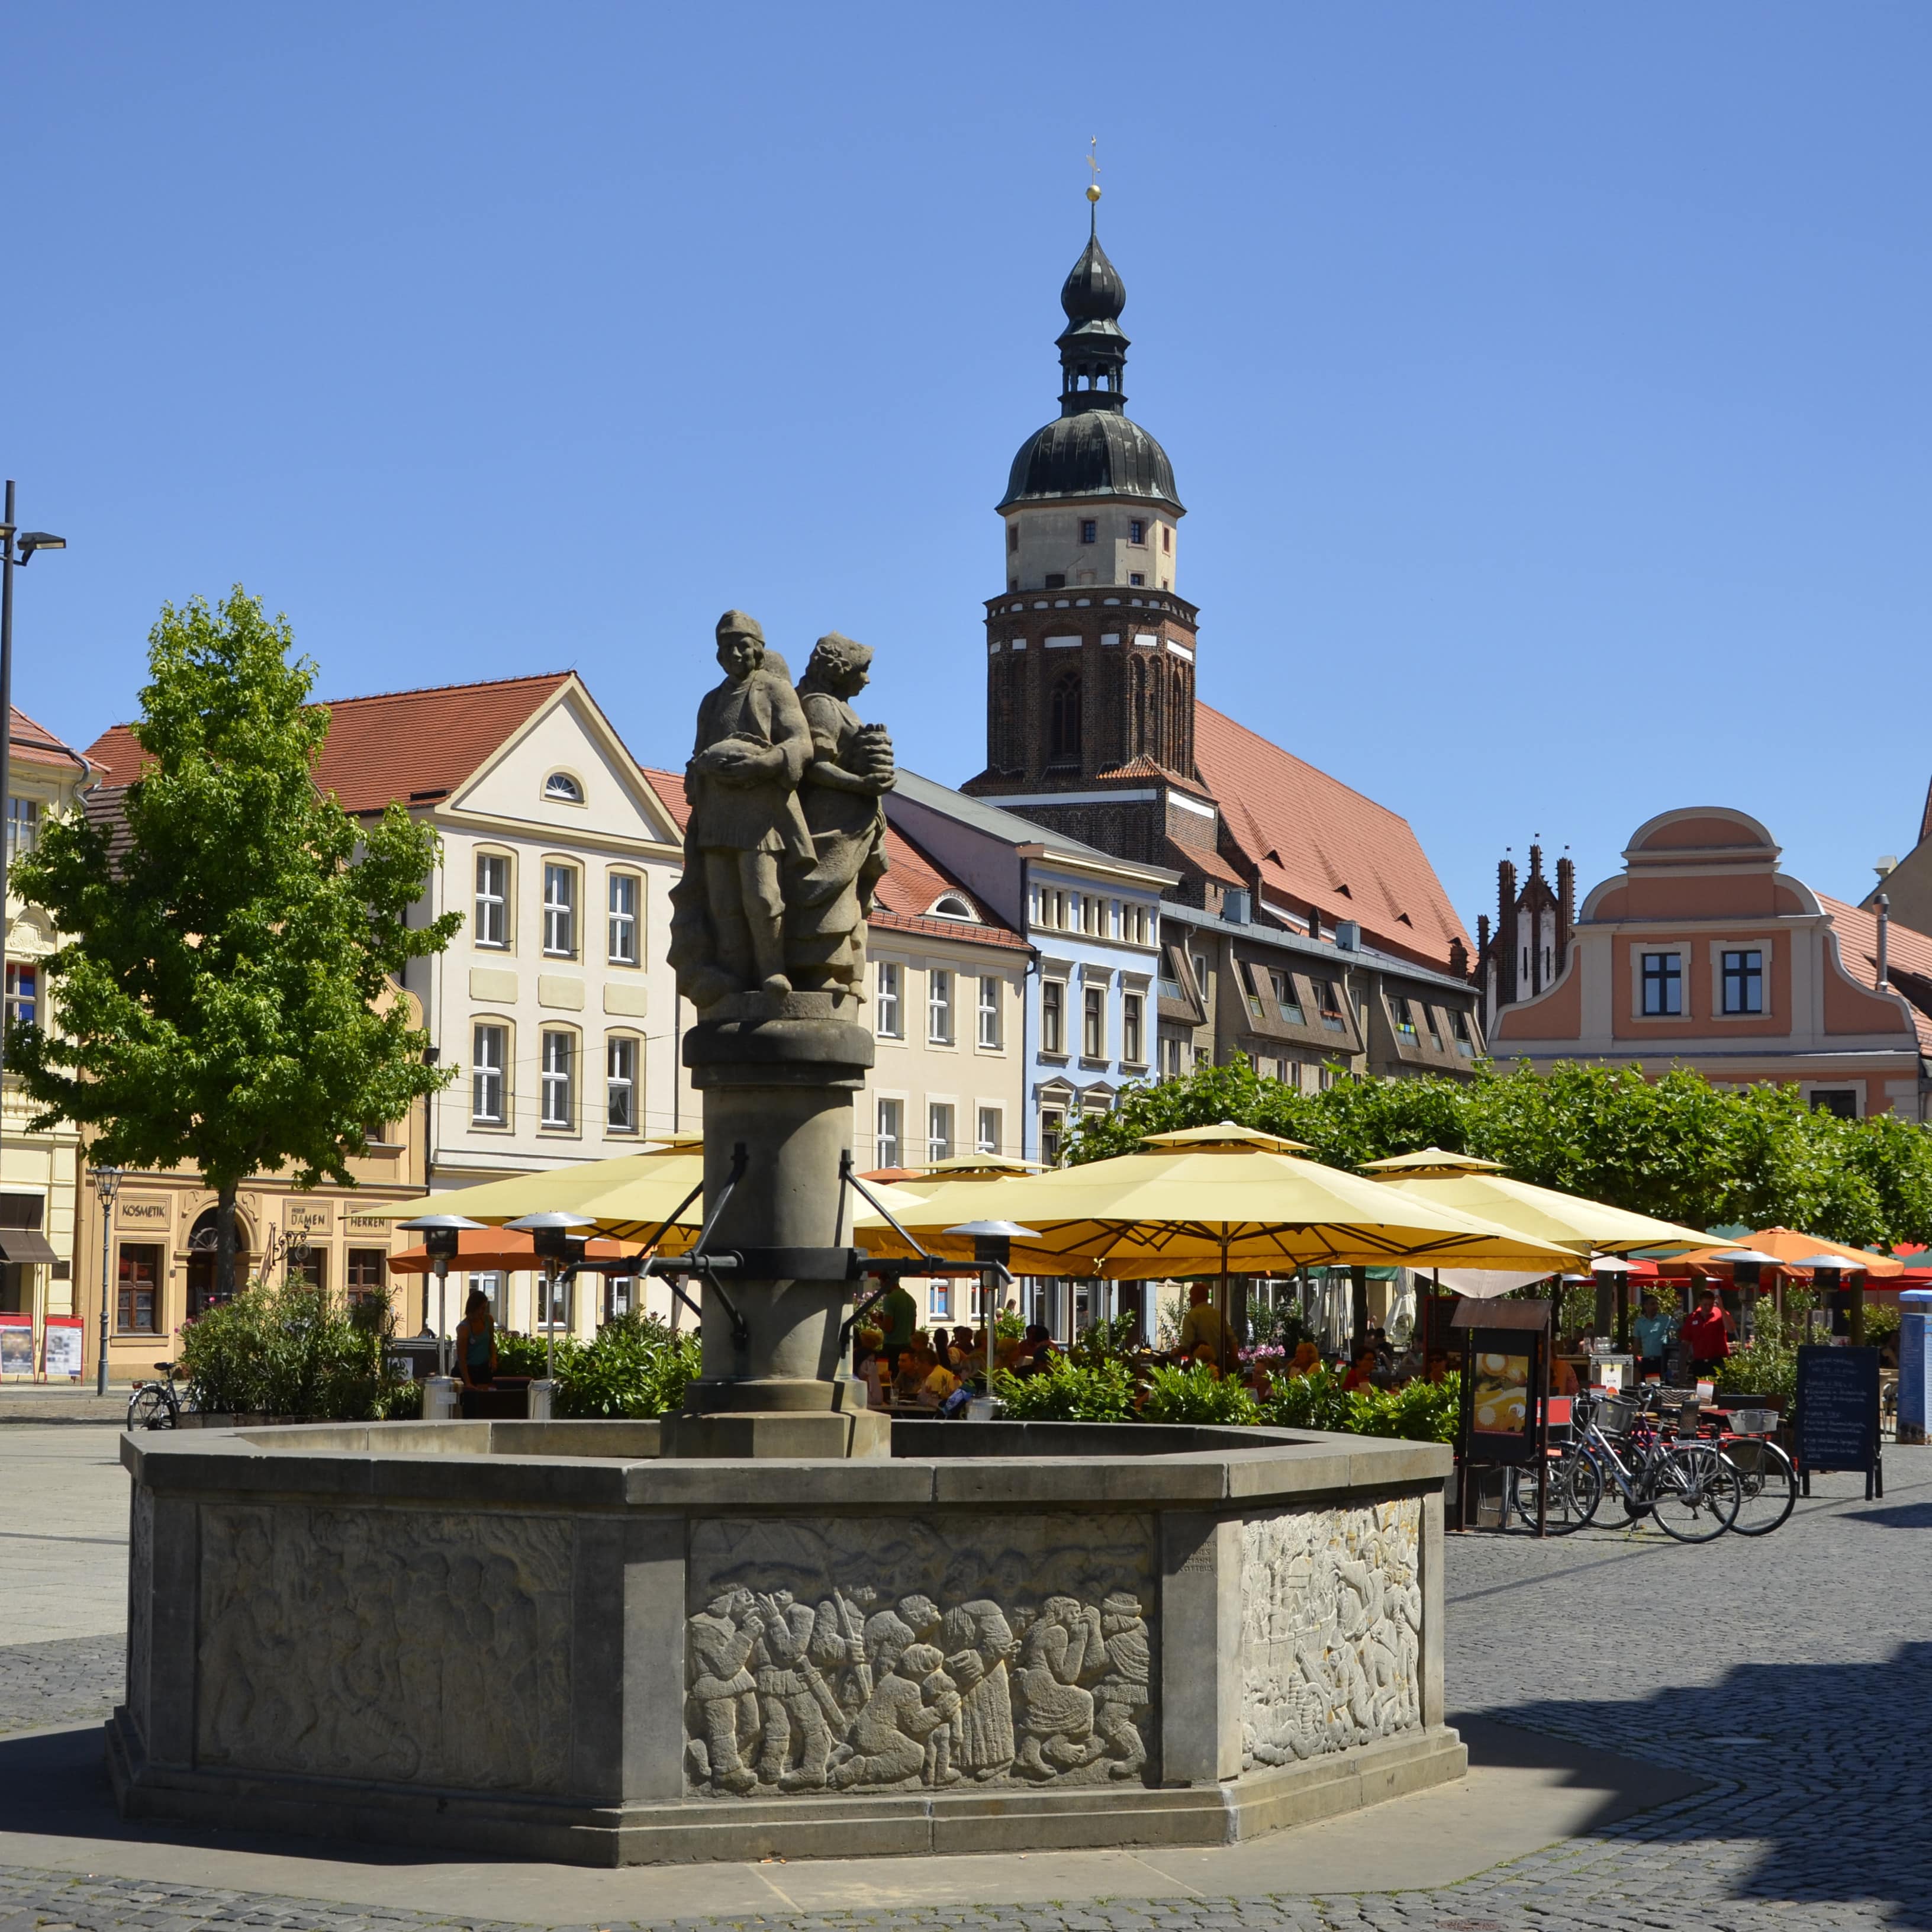 Blick auf den Marktbrunnen am Altmarkt, dahinter ein Café, Häuser und eine Kirche.